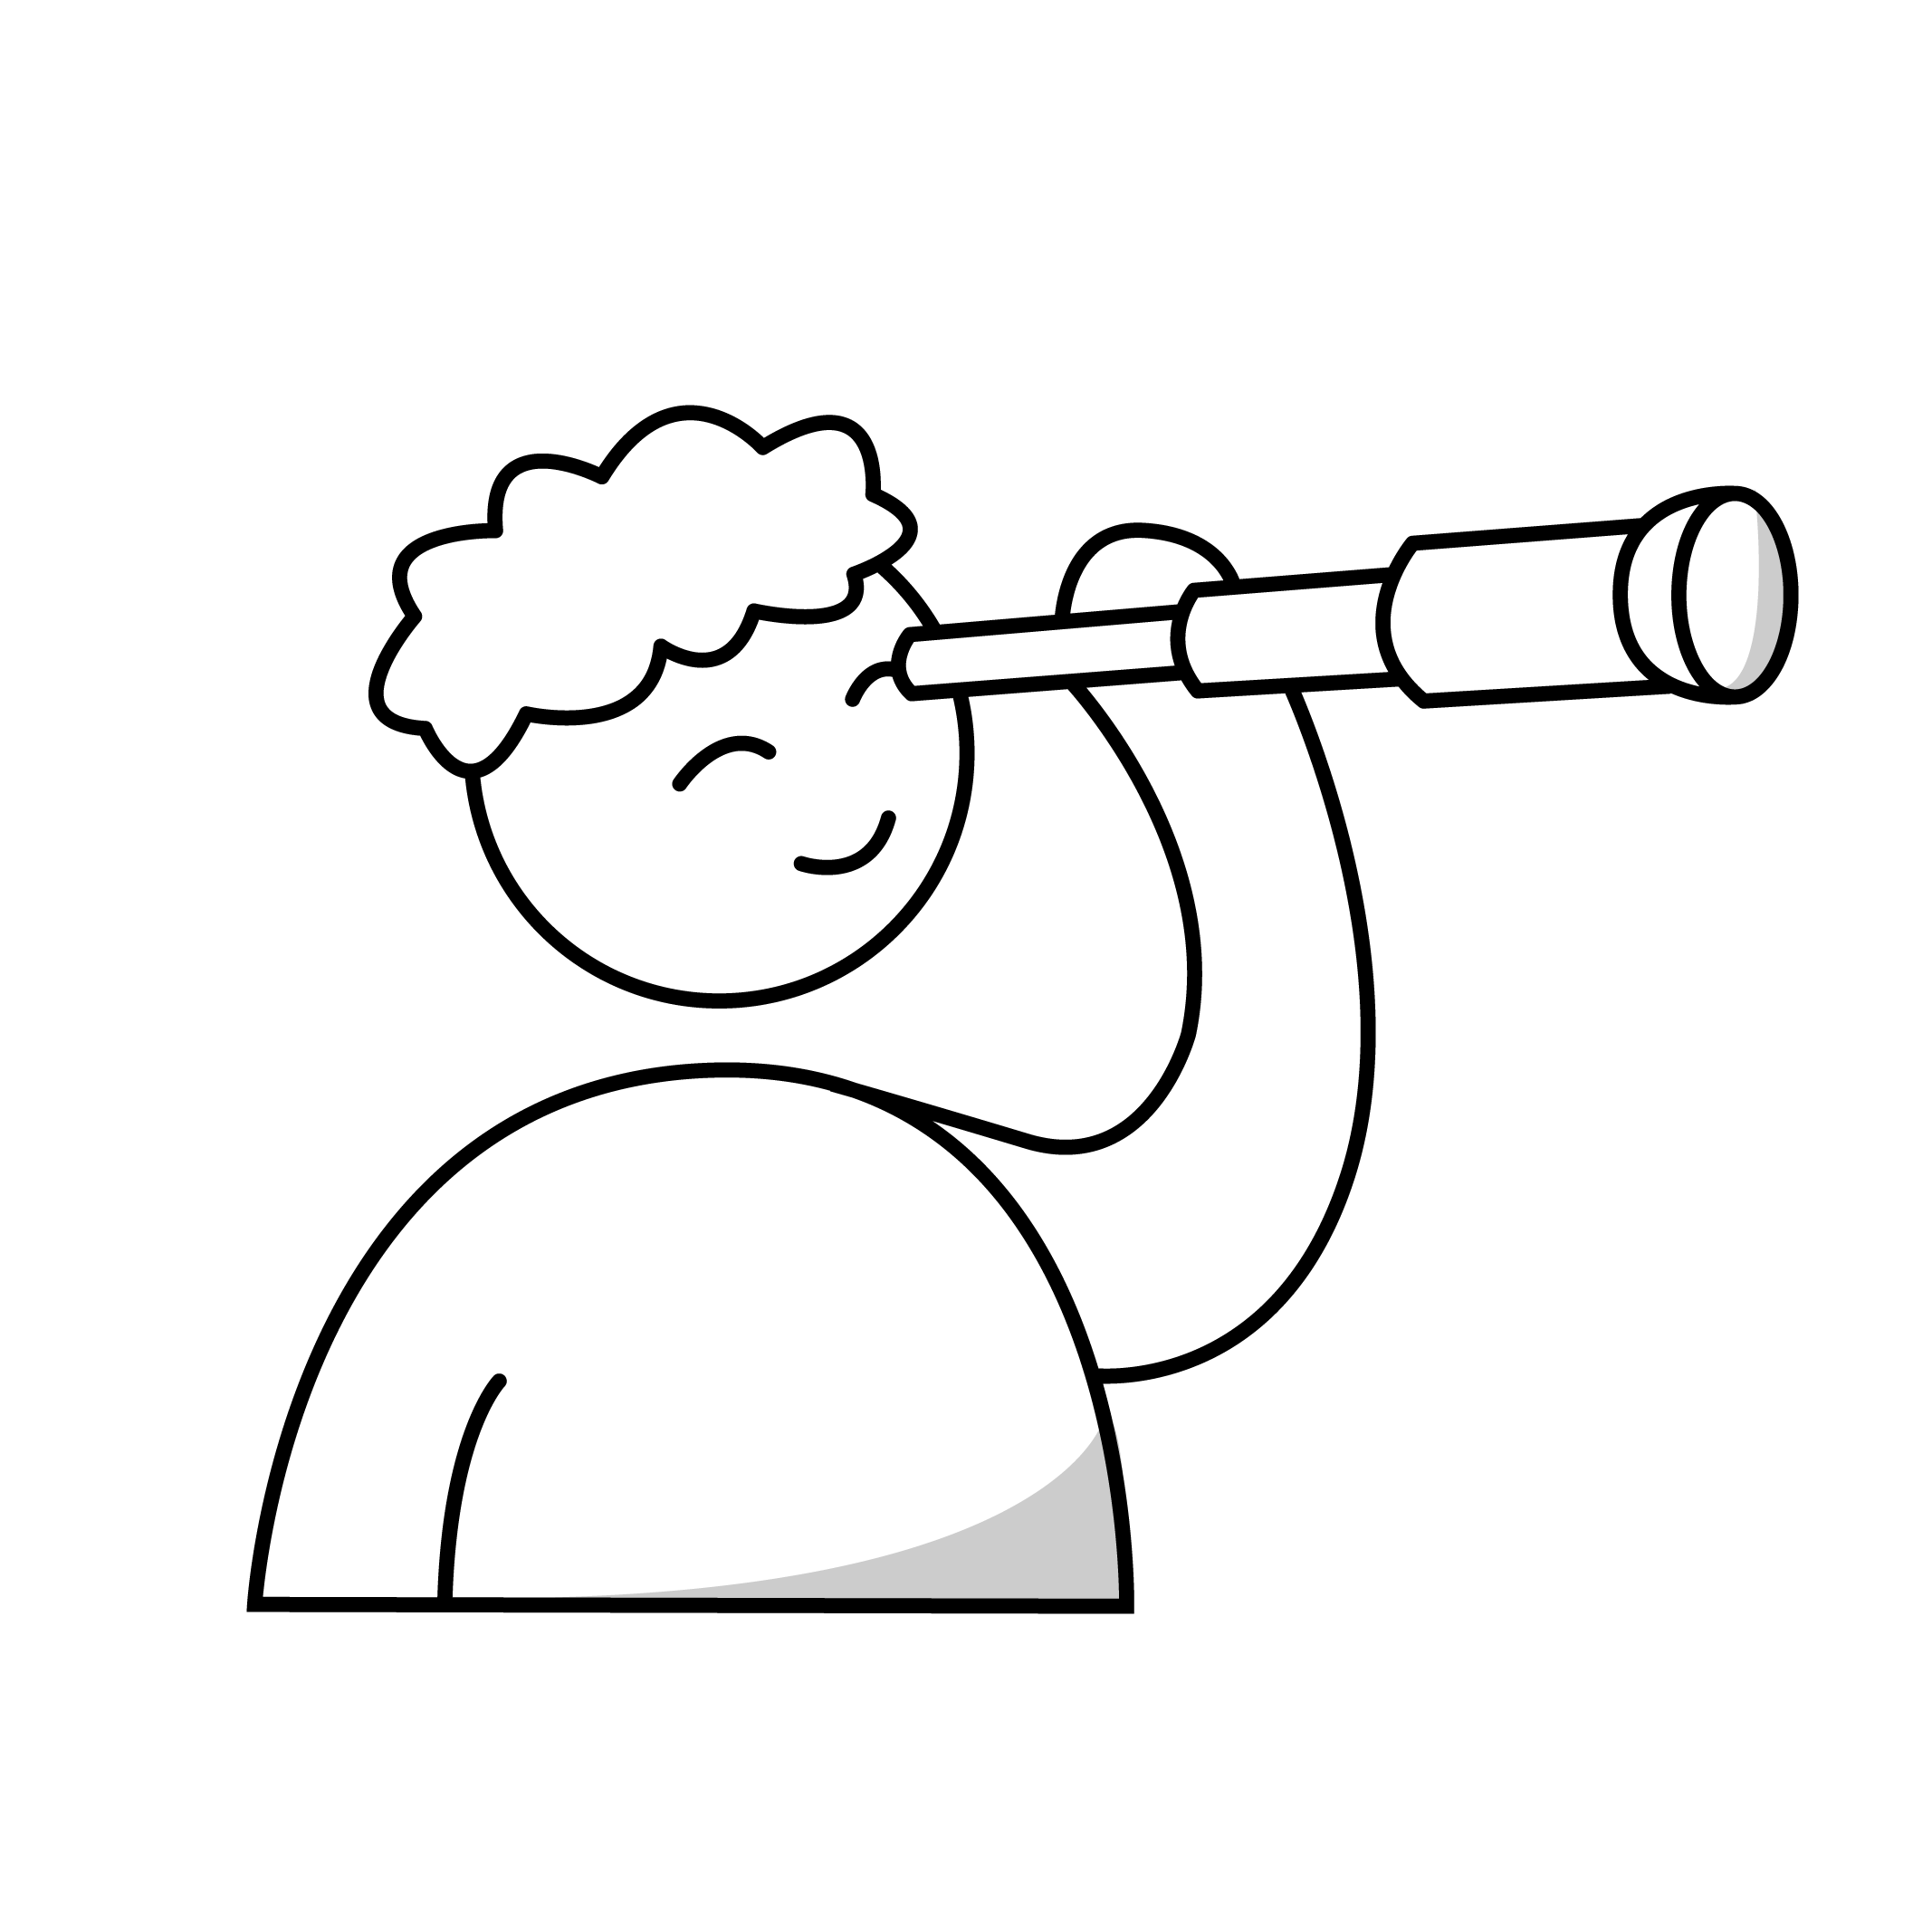 pictogramme noir d'une personne regardant dans une longue vue